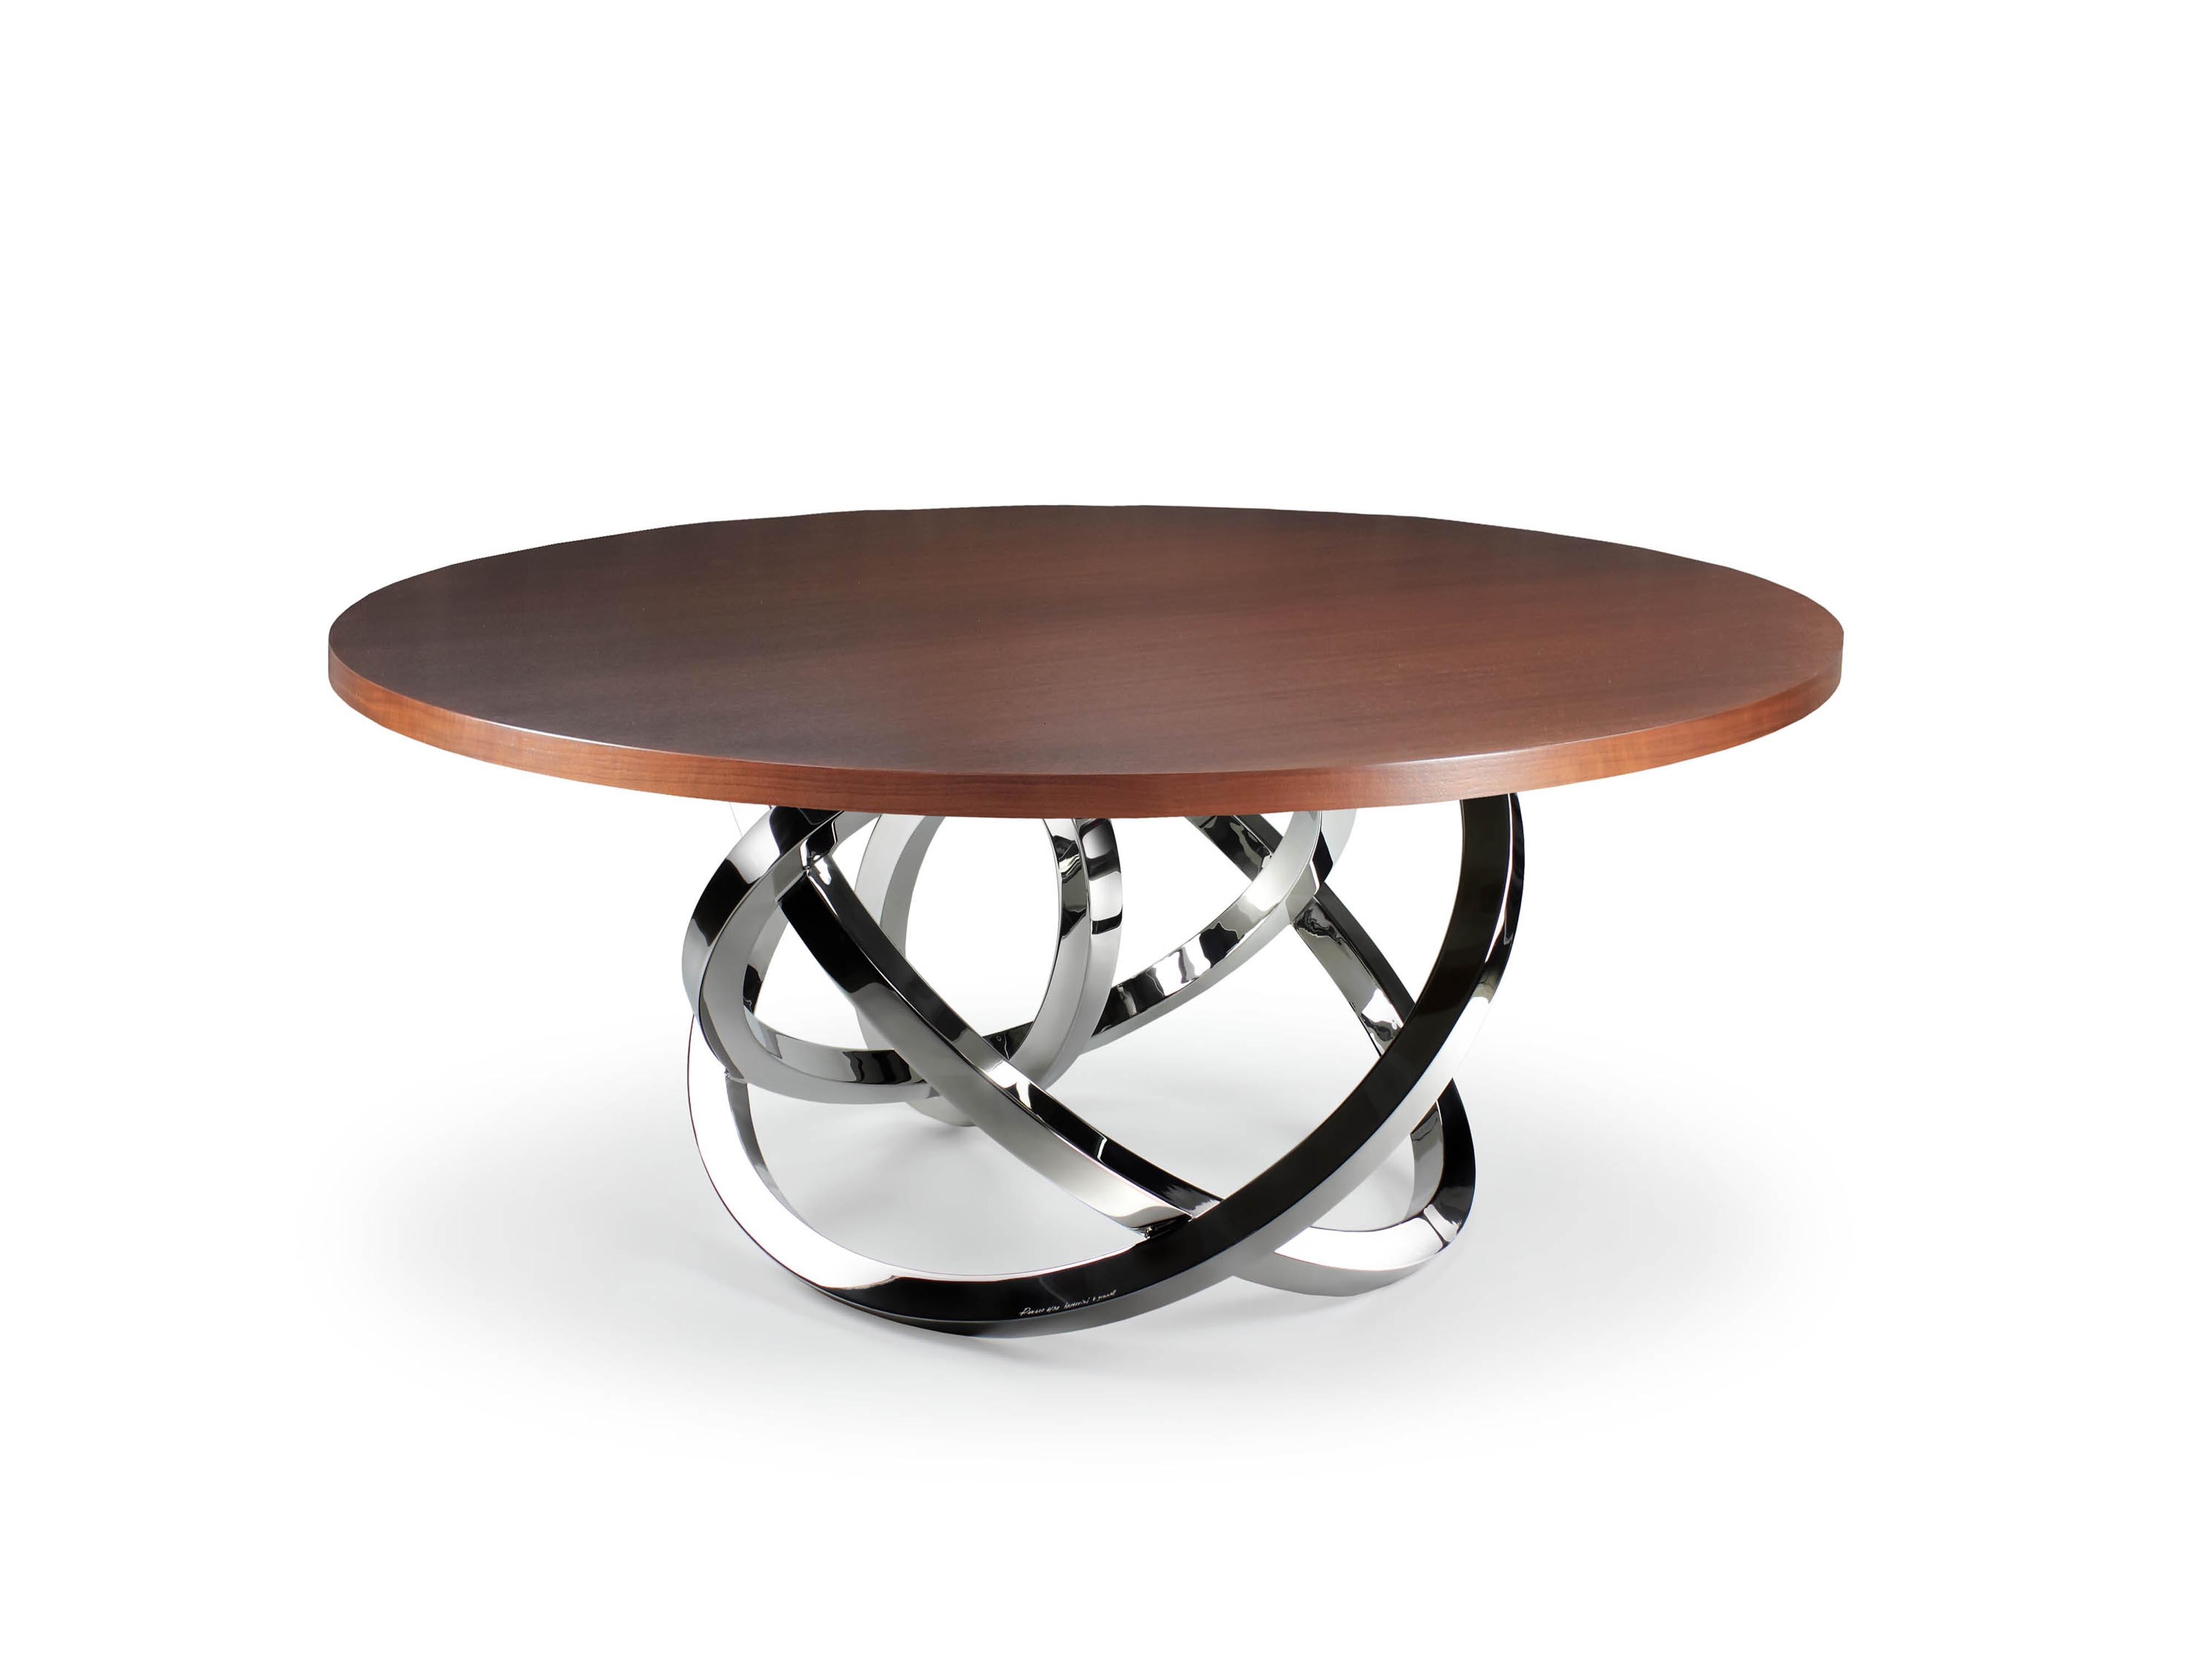 Der skulpturale Tisch 'Perseo' ist ein auffälliger Tisch mit einer Struktur aus hochglanzpoliertem Edelstahl und einer runden Tischplatte aus Walnussholz. Jeder einzelne Armreif wird von Hand geschweißt und hochglanzpoliert. Die spiegelnde